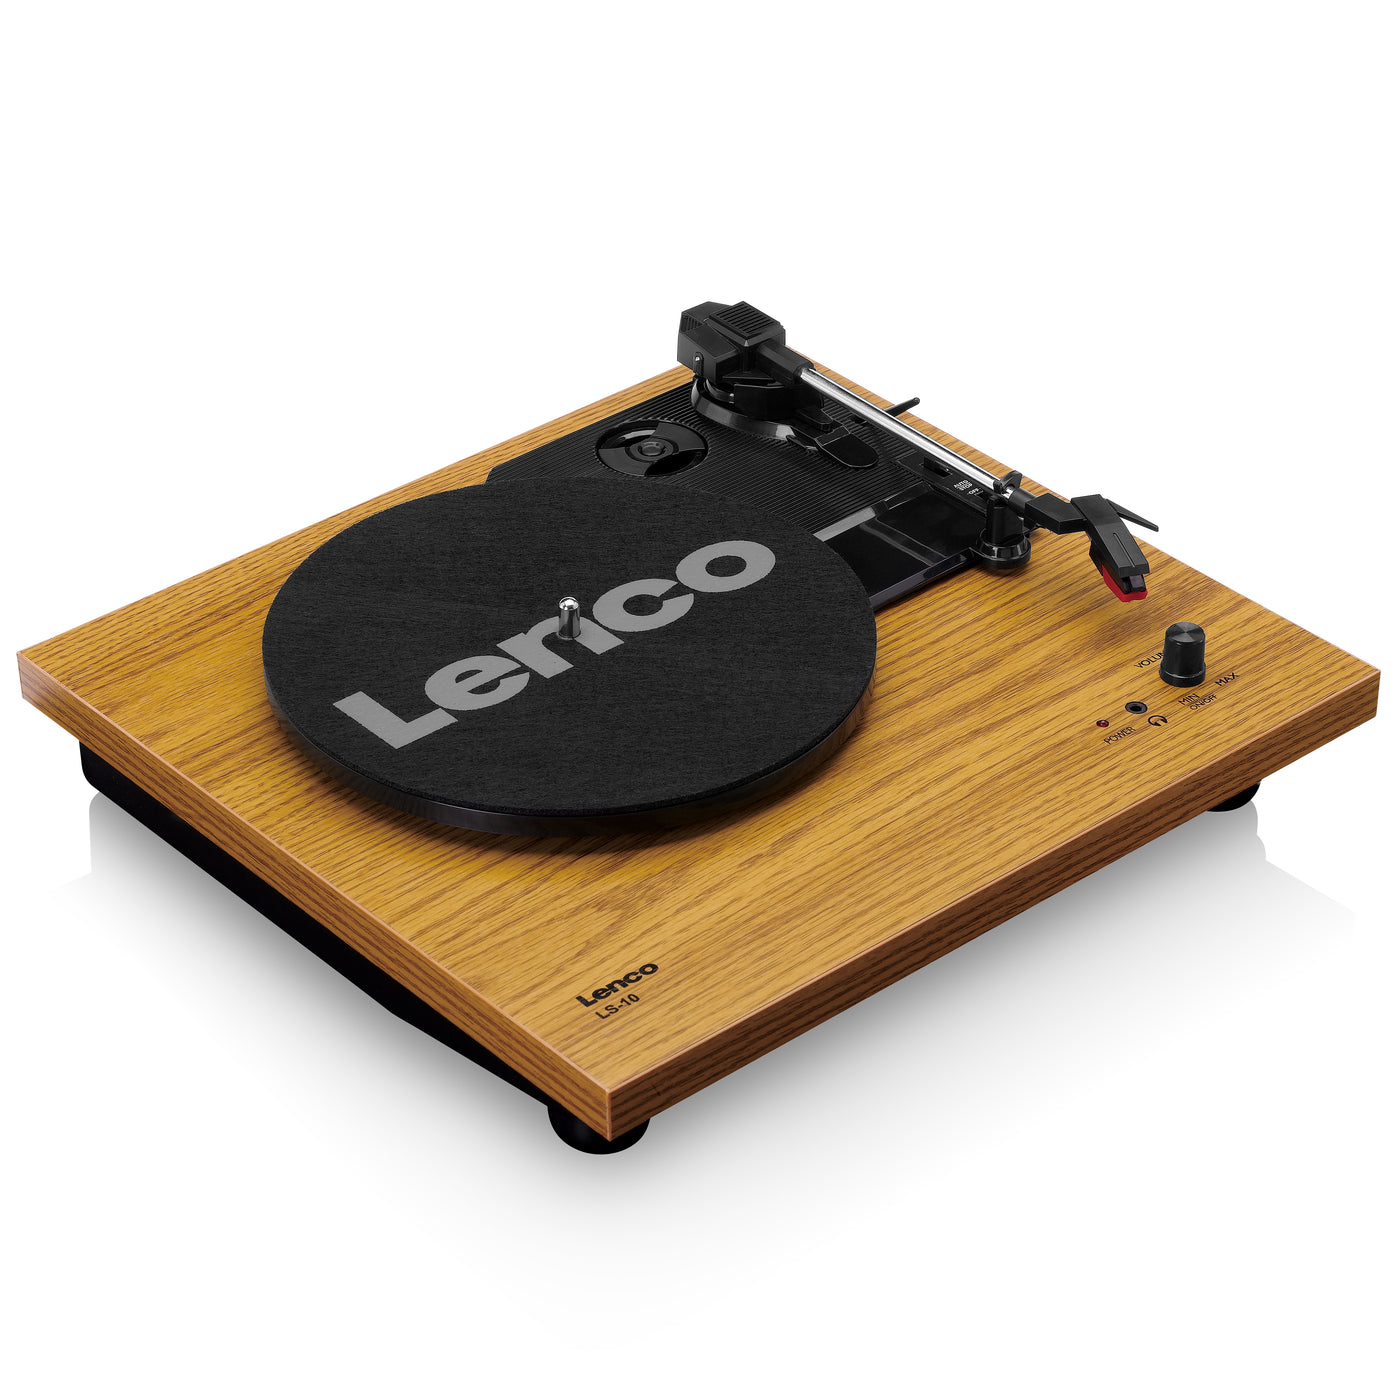 LENCO LS-10WD - Platenspeler met ingebouwde speakers - Hout